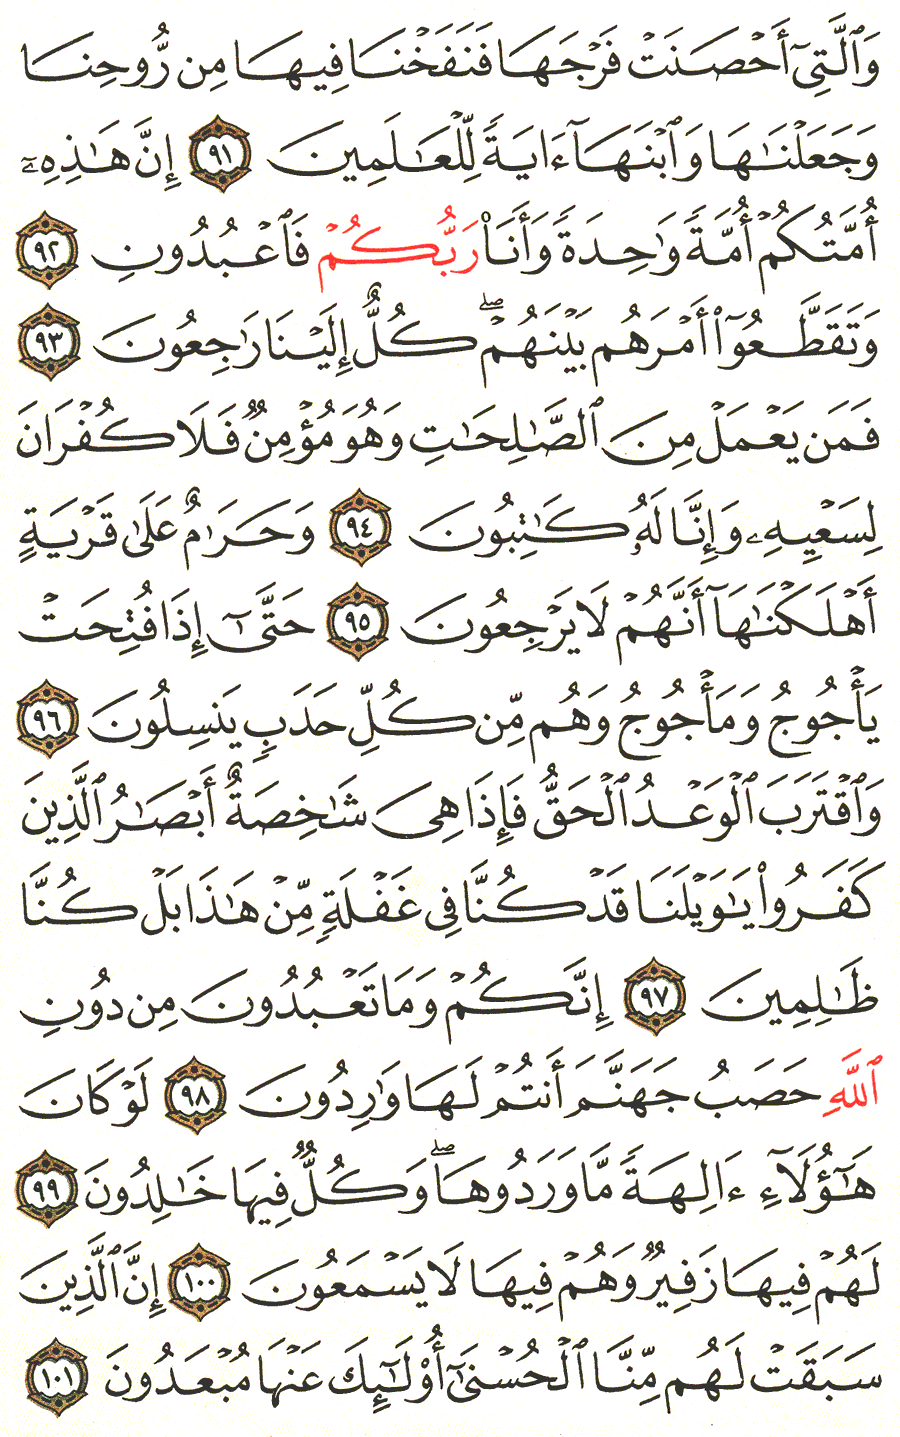 الصفحة 330 من القرآن الكريم